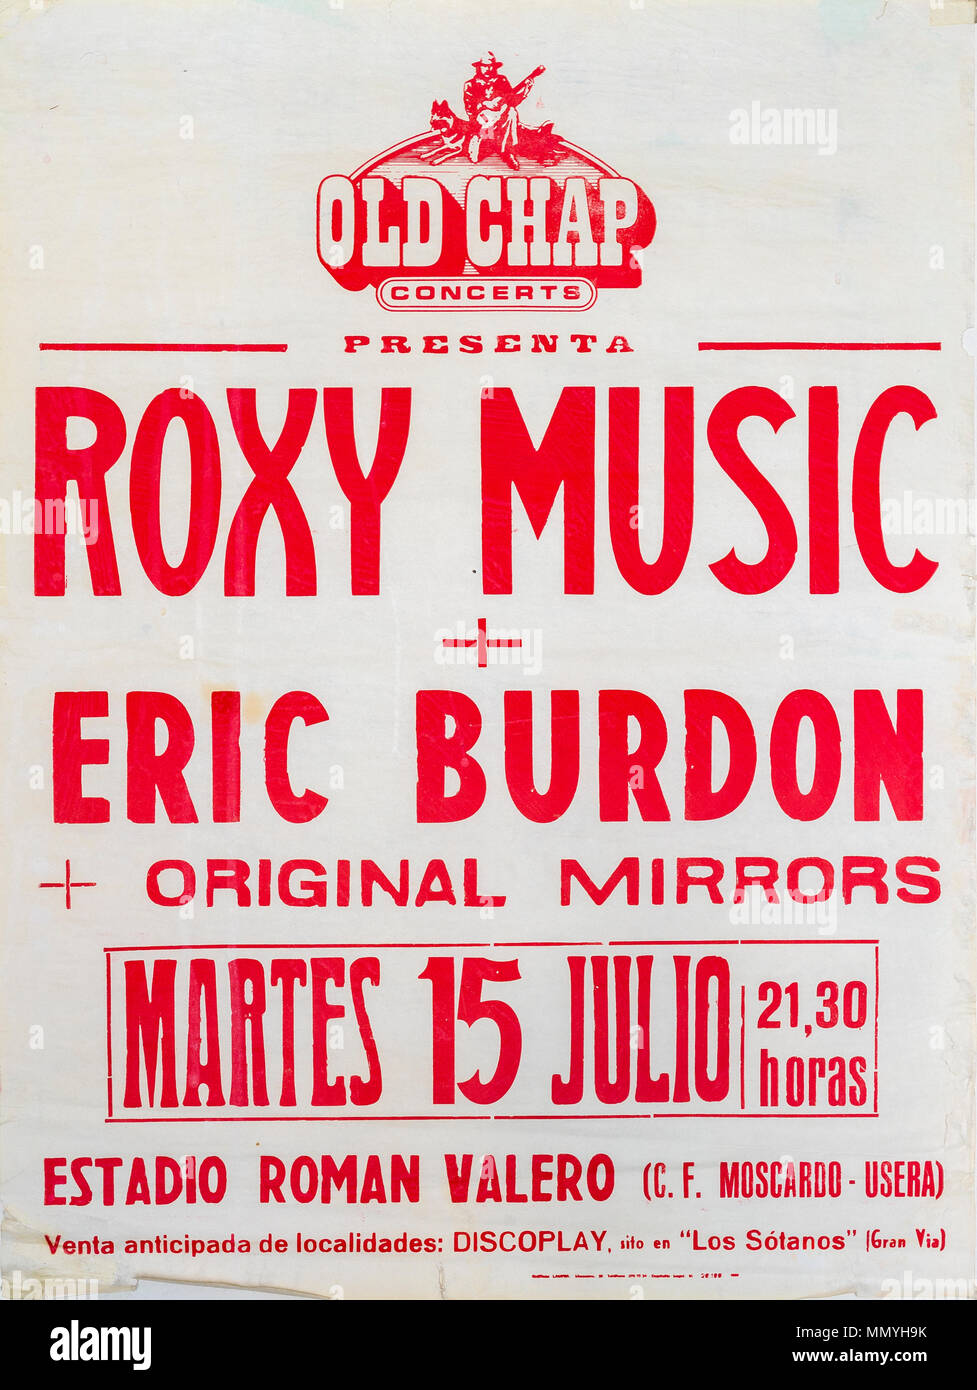 Roxy Music et Eric Burdon, Madrid, 1980 tour de l'affiche musicale Banque D'Images